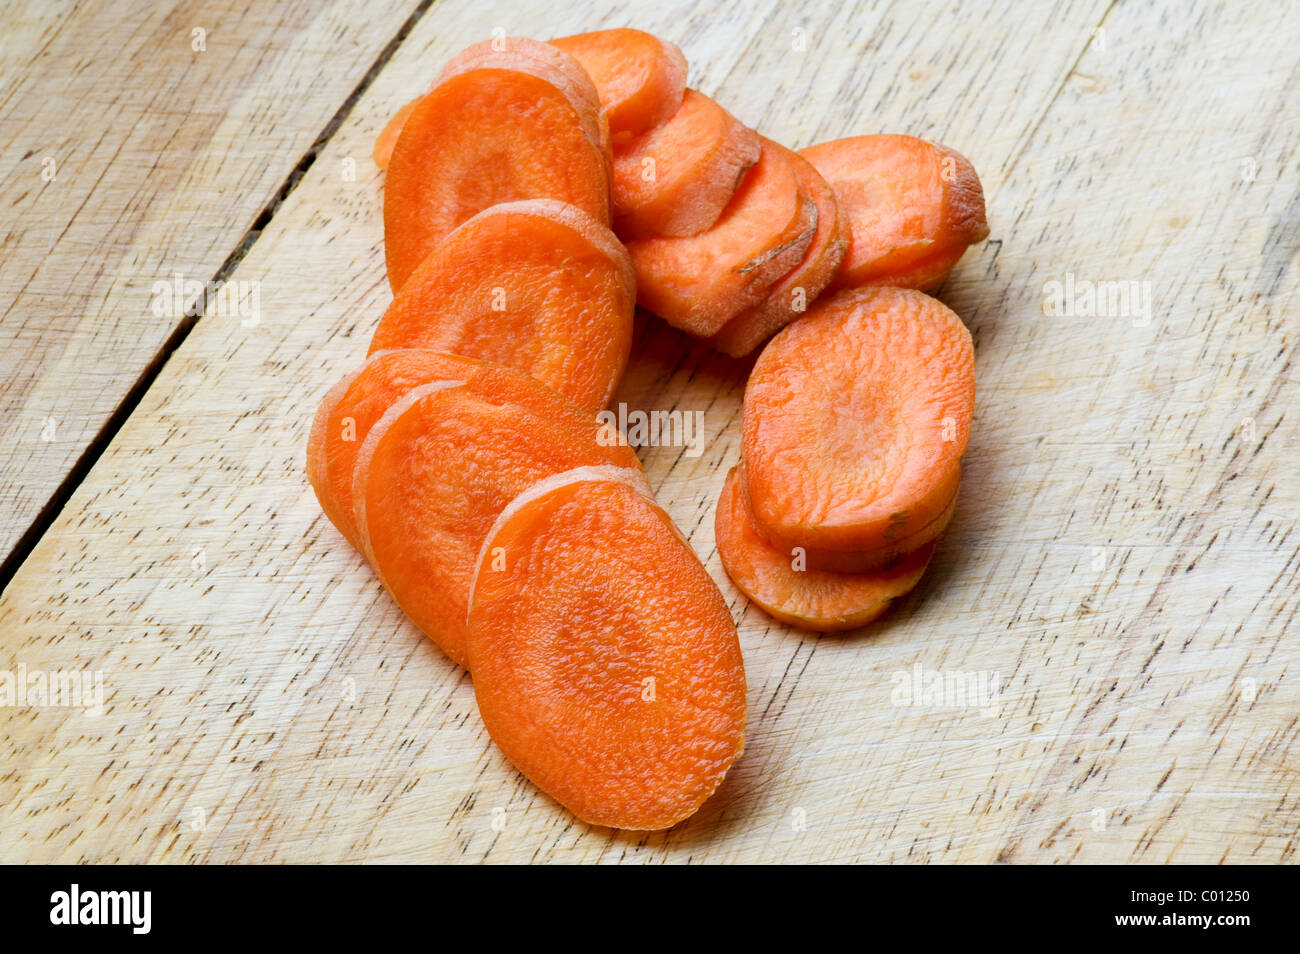 Oggetto su bianco - carota su un tagliere Foto Stock